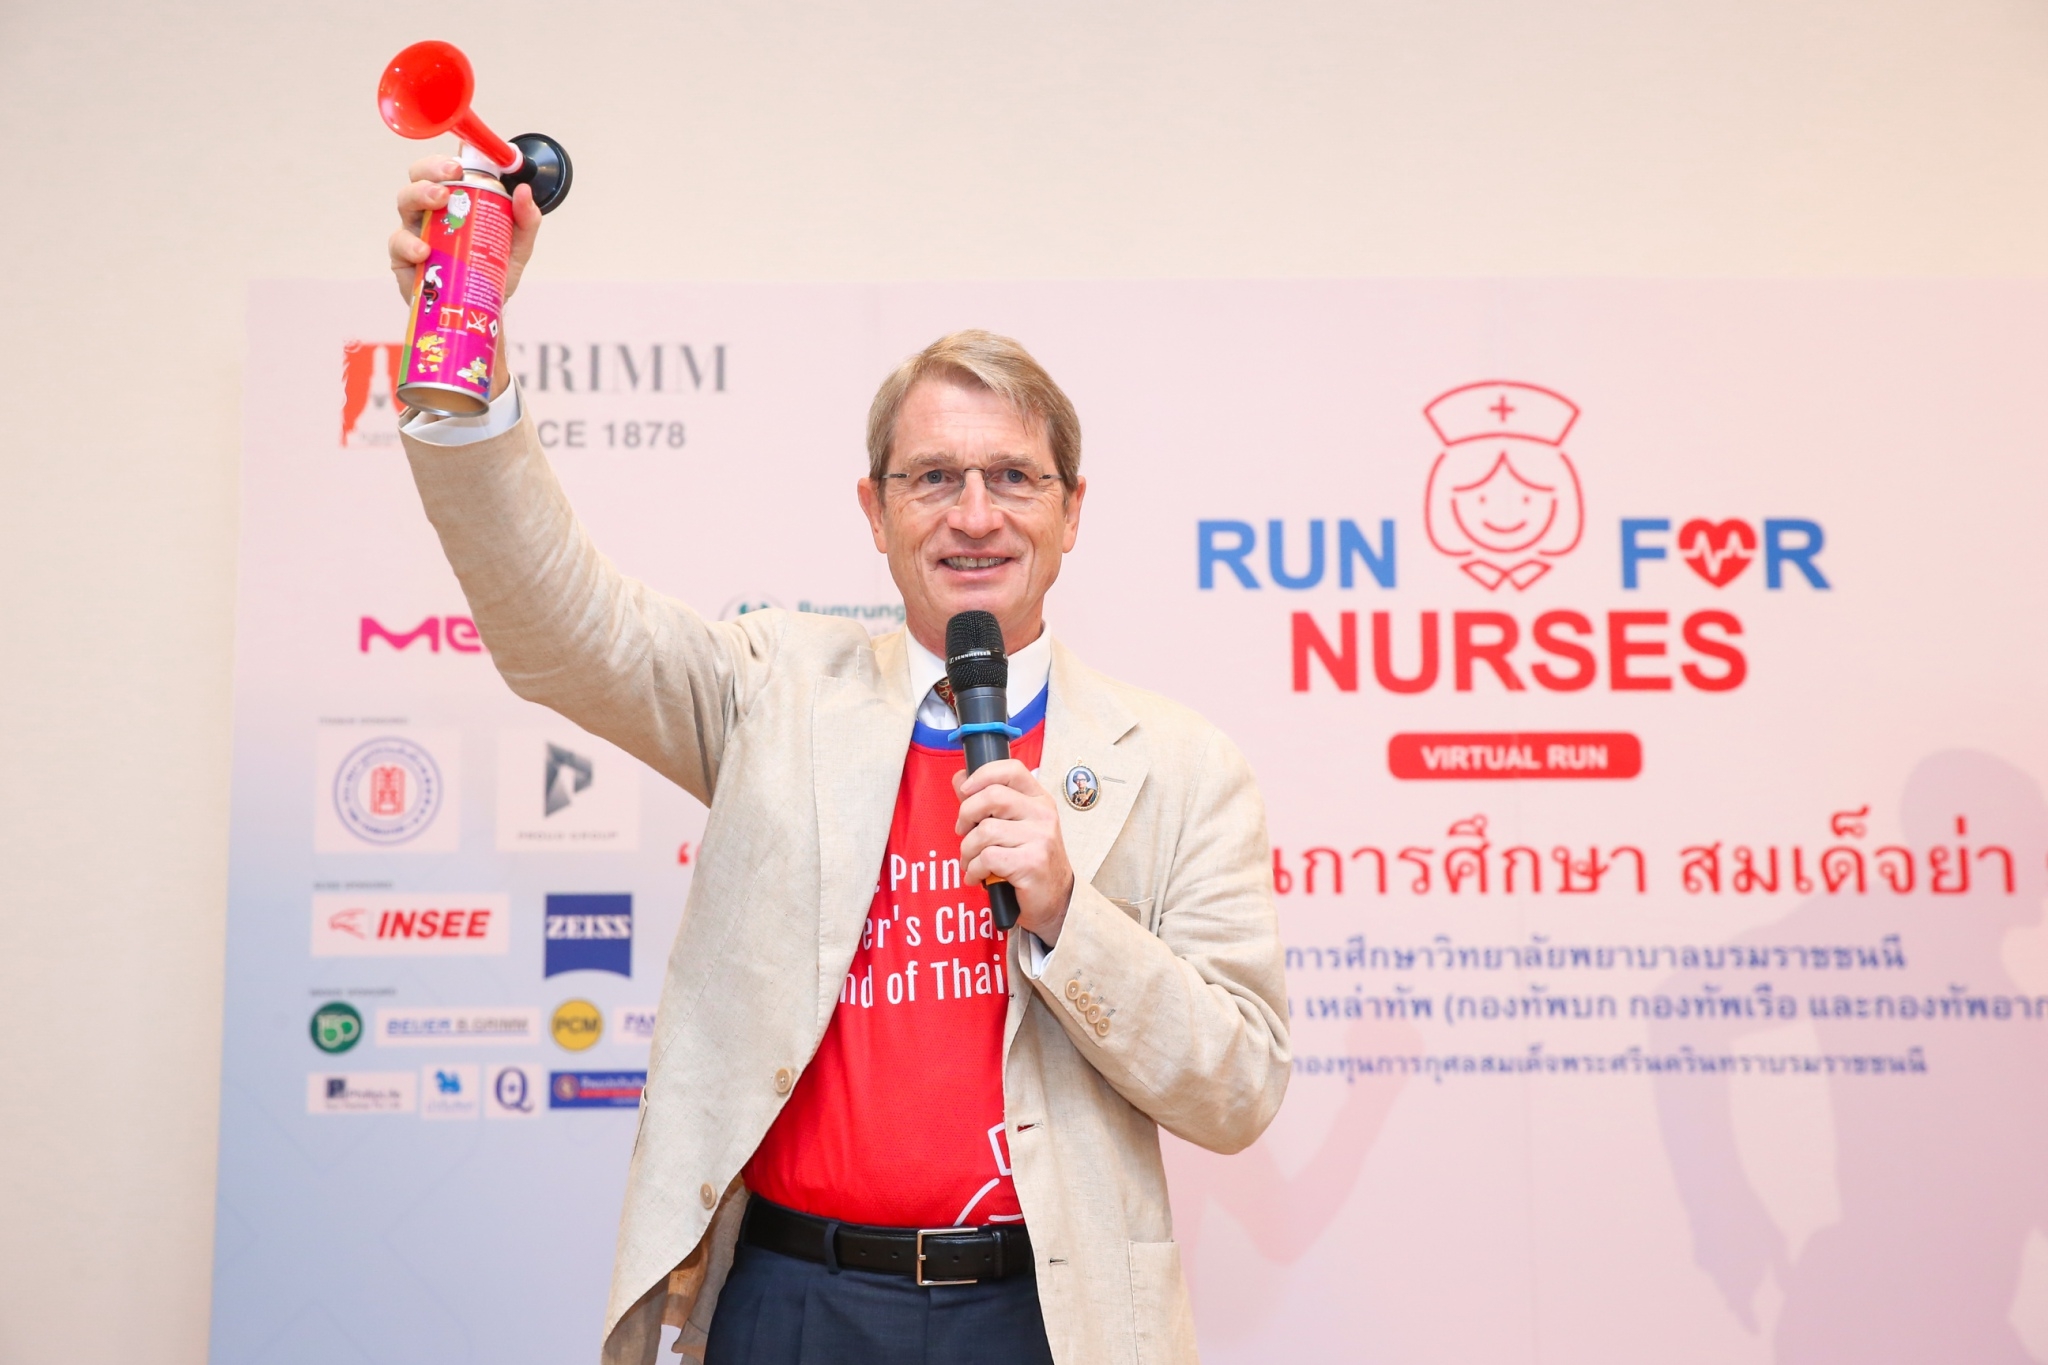 มูลนิธิกองทุนการกุศลสมเด็จพระศรีนครินทราฯ ร่วมกับ บี.กริม จัดเดิน-วิ่ง Run for Nurses 2020 Virtual Run สมทบทุน ทุนการศึกษาสมเด็จย่า 90